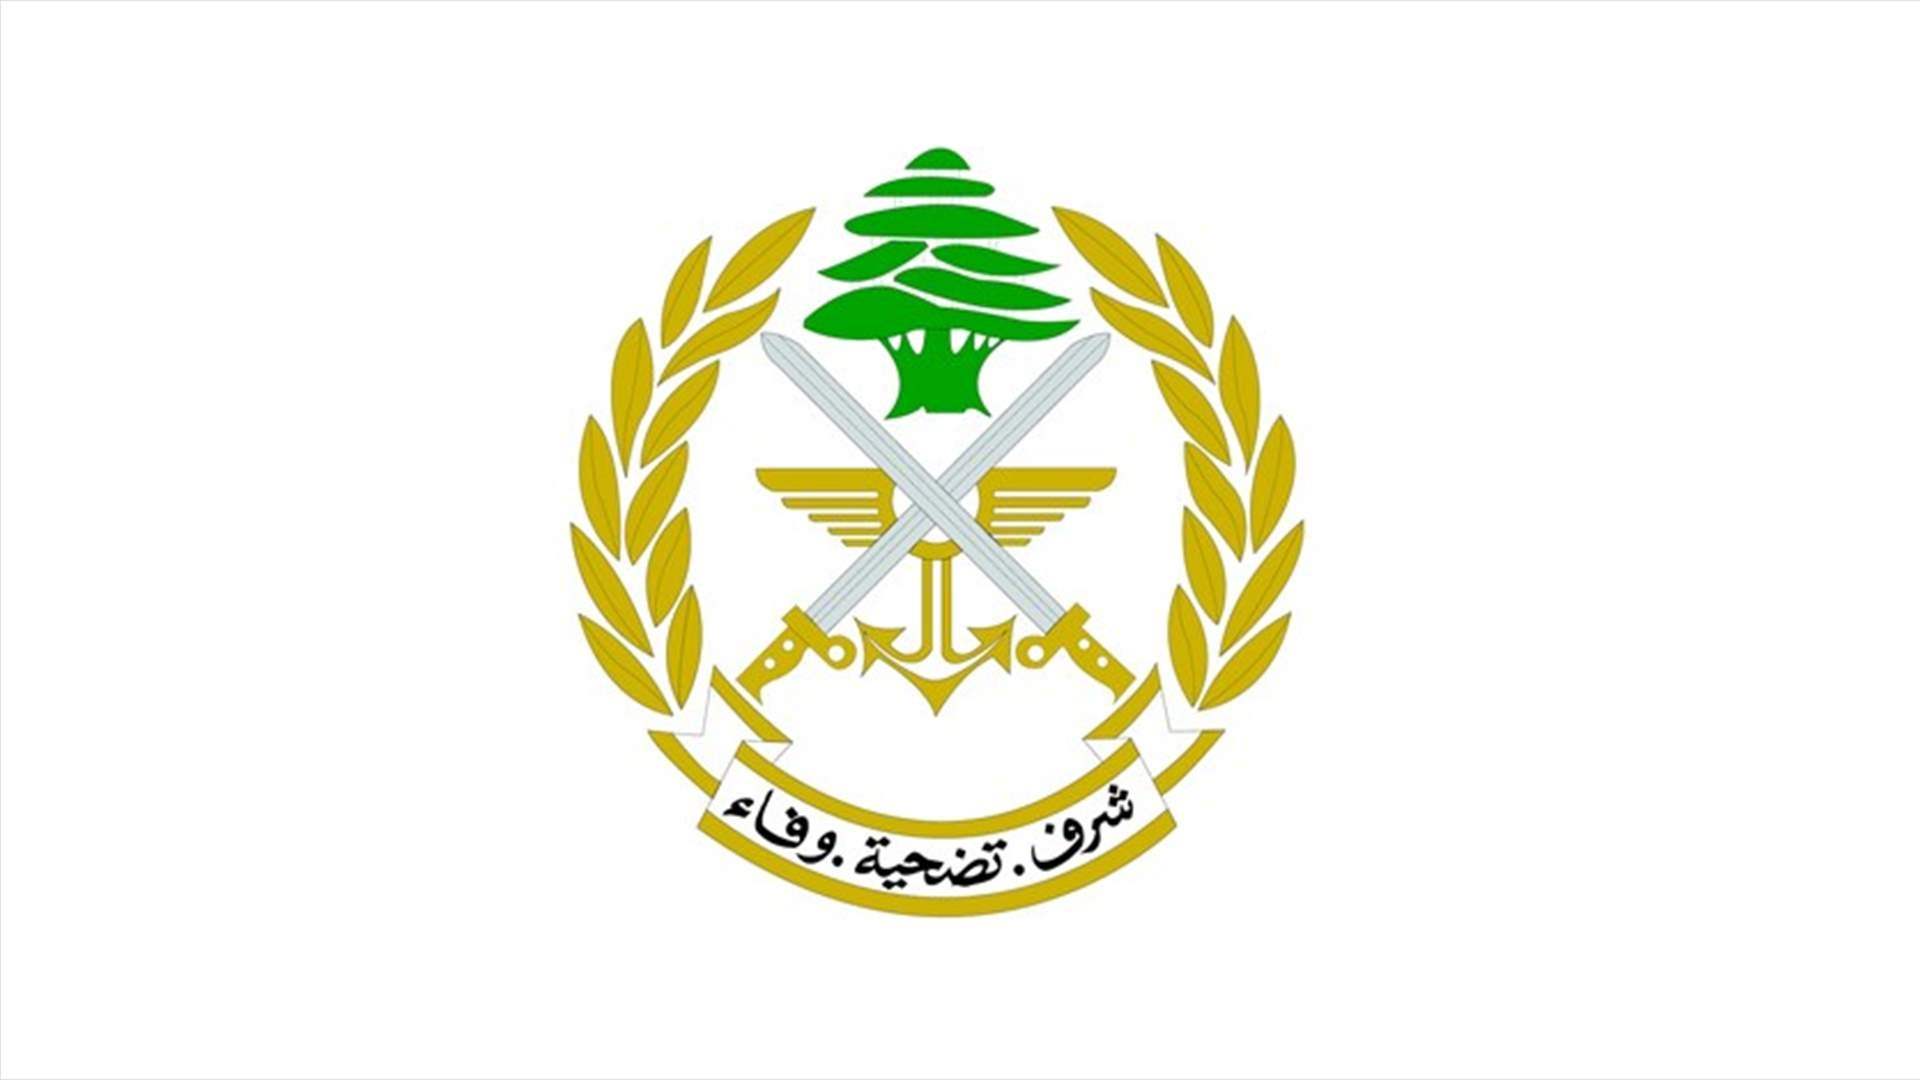 الجيش: توقيف مواطن في كفركلا لاجتيازه السياج التقني من الأراضي الفلسطينية المحتلة إلى لبنان